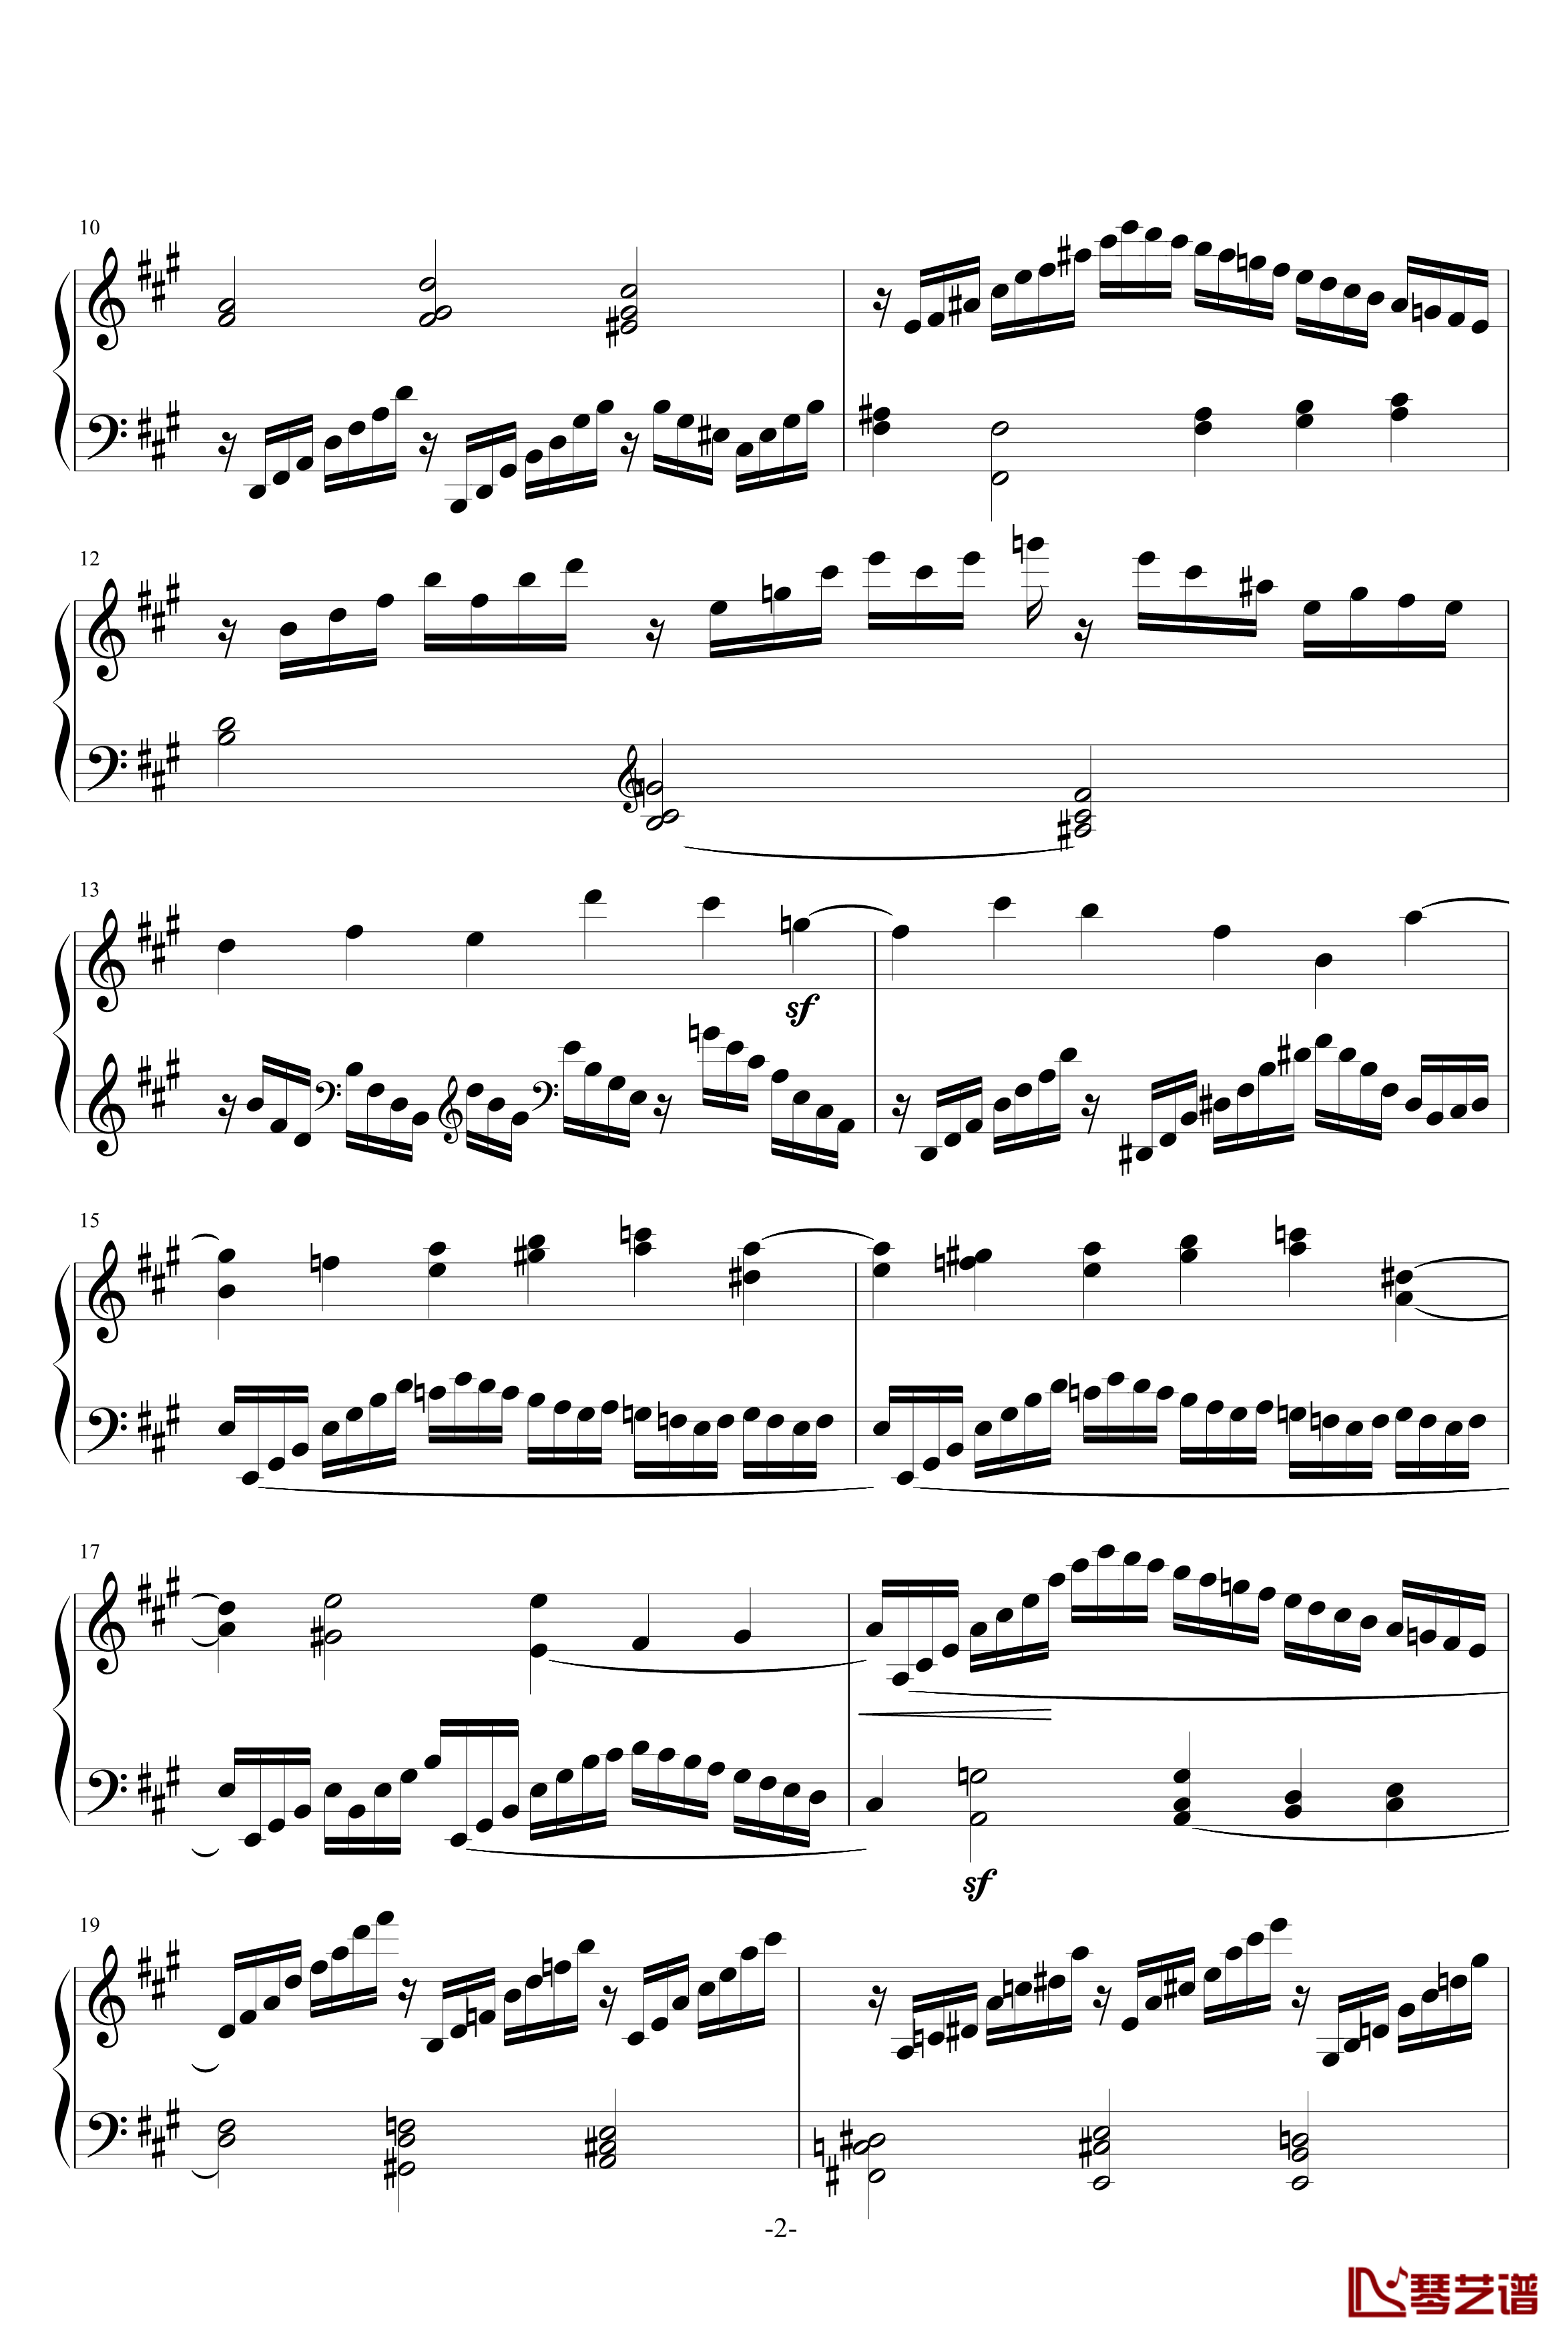 克列门蒂练习曲之第7首钢琴谱-克来门蒂2